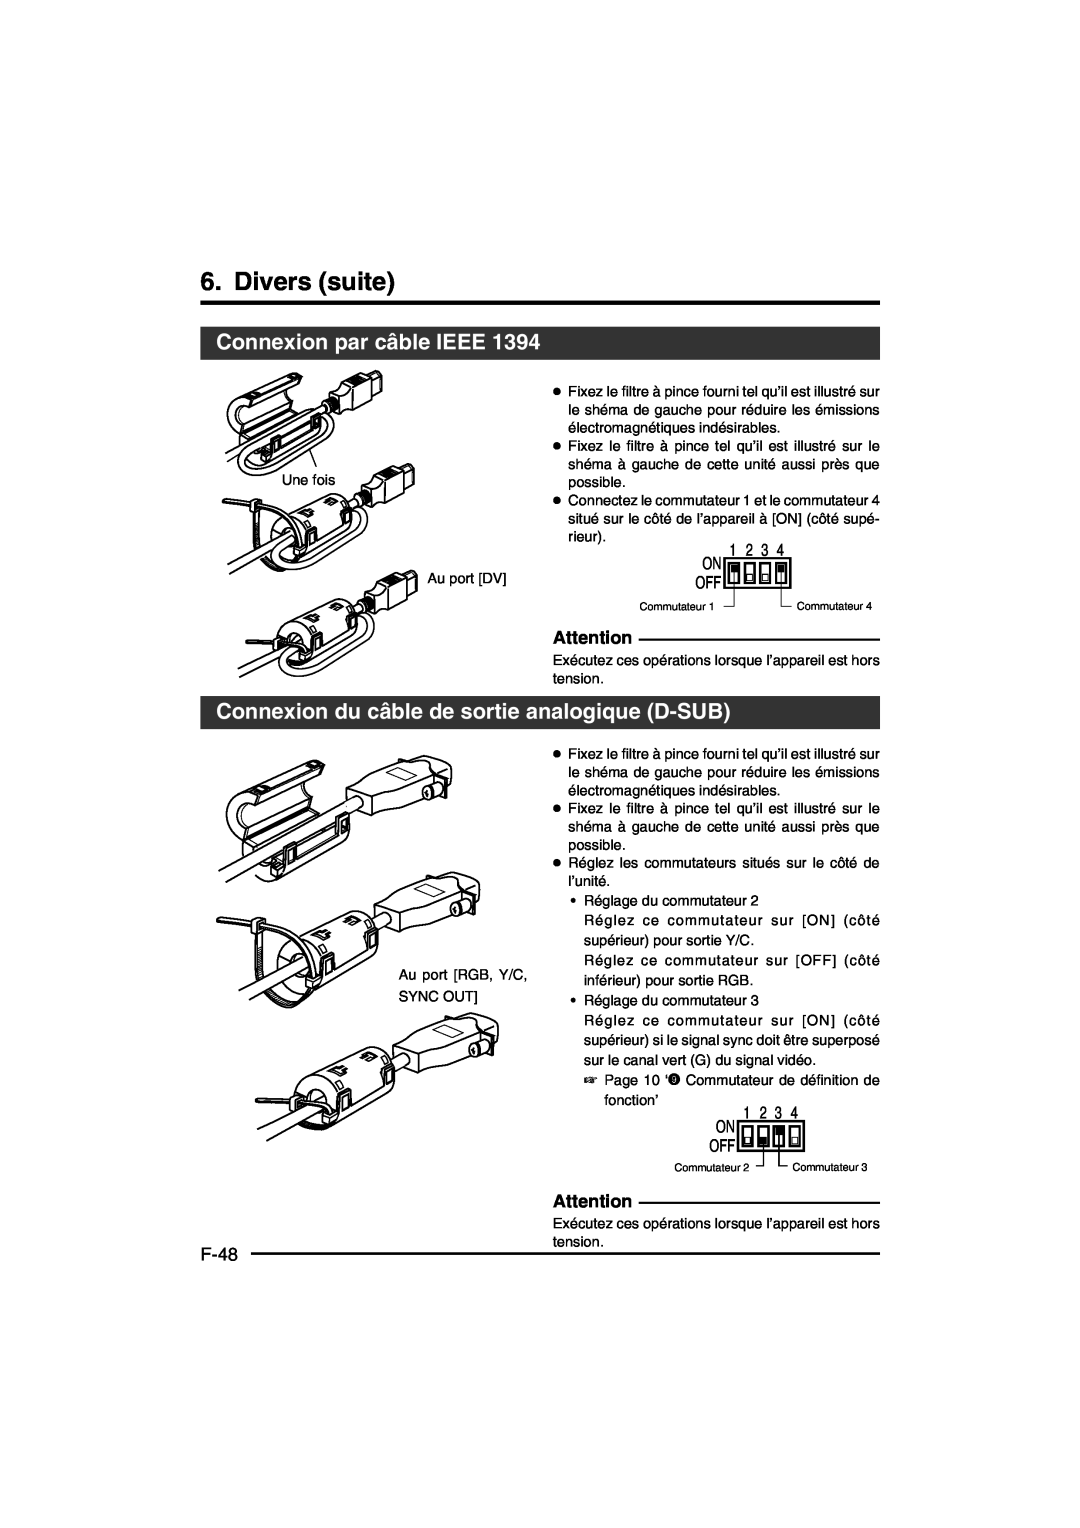 JVC KY-F550E instruction manual Divers suite, Connexion par câble IEEE, Connexion du câble de sortie analogique D-SUB, F-48 